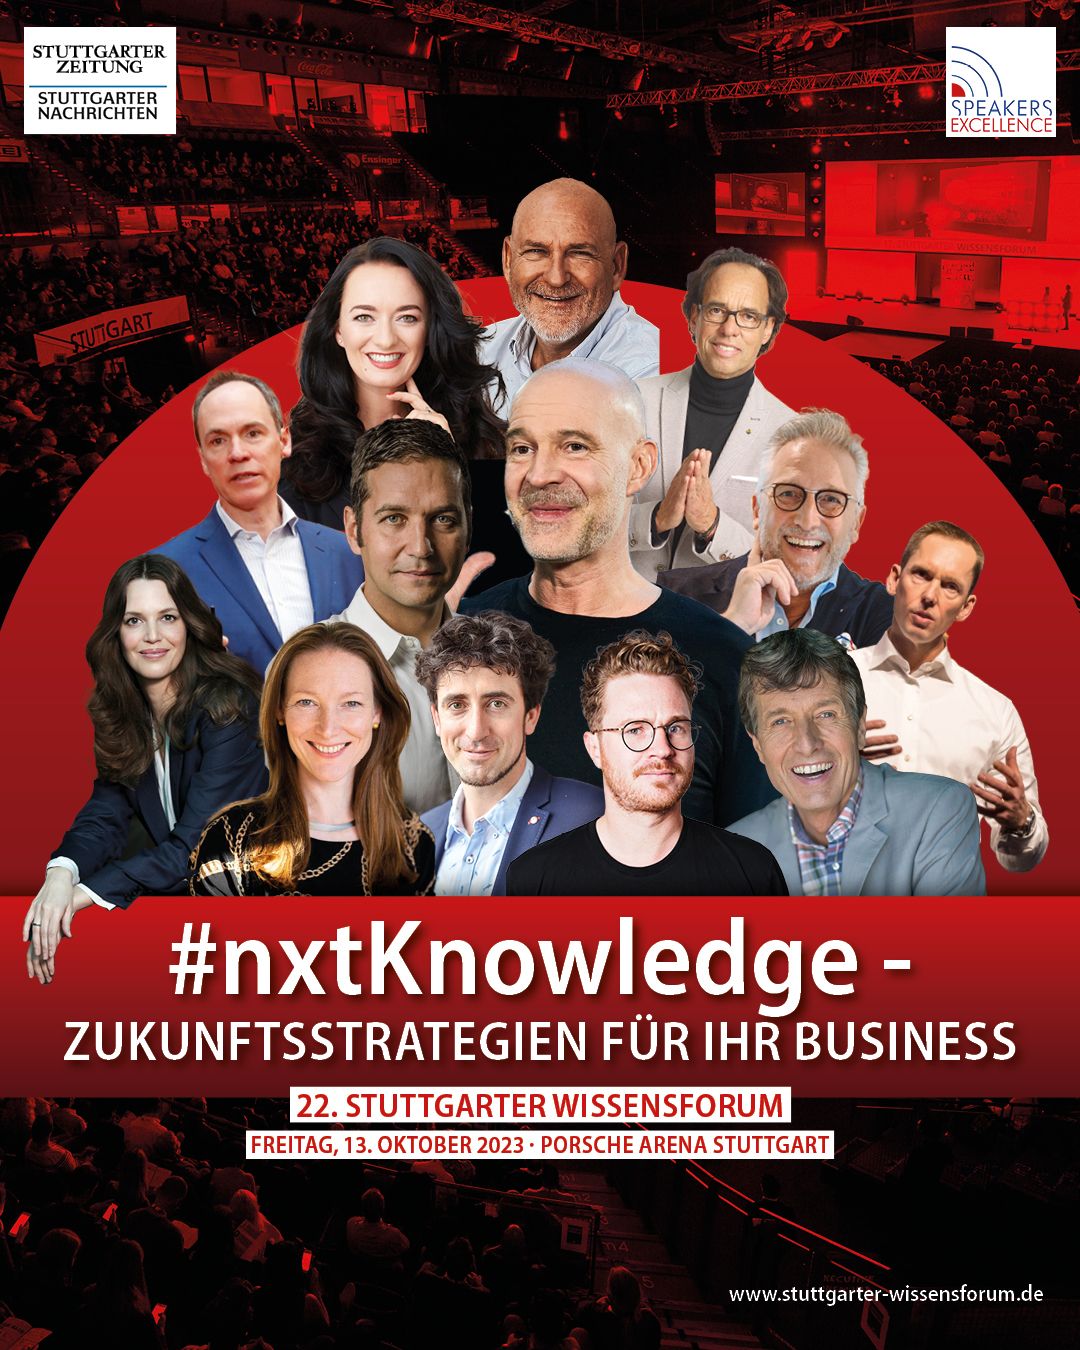 Experience Design für das #nxtKnowledge Wissensforum in der Porsche Arena in Stuttgart